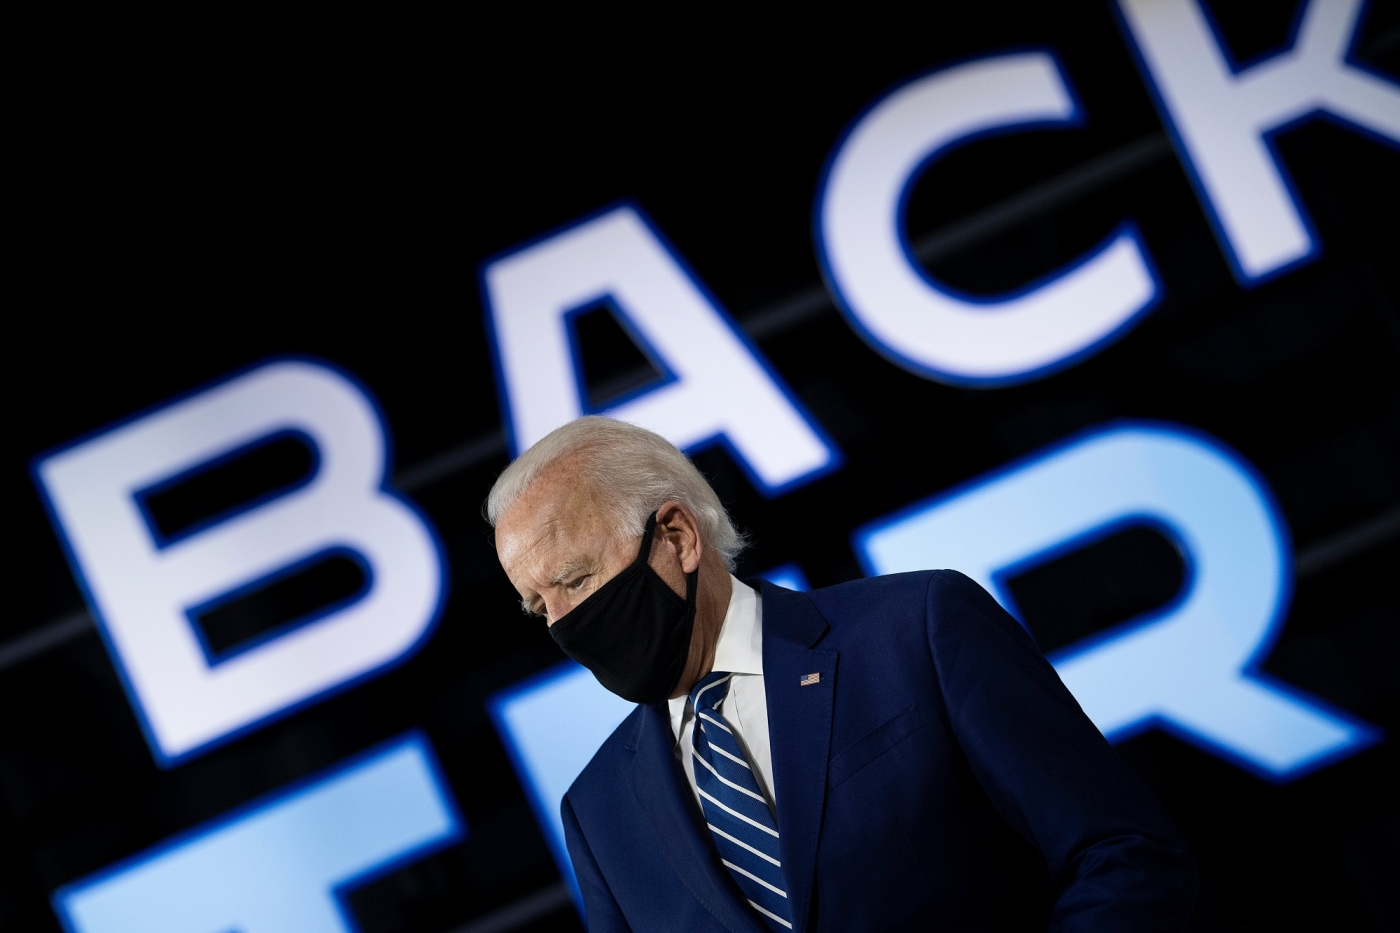 Joe Biden, wearing a black mask